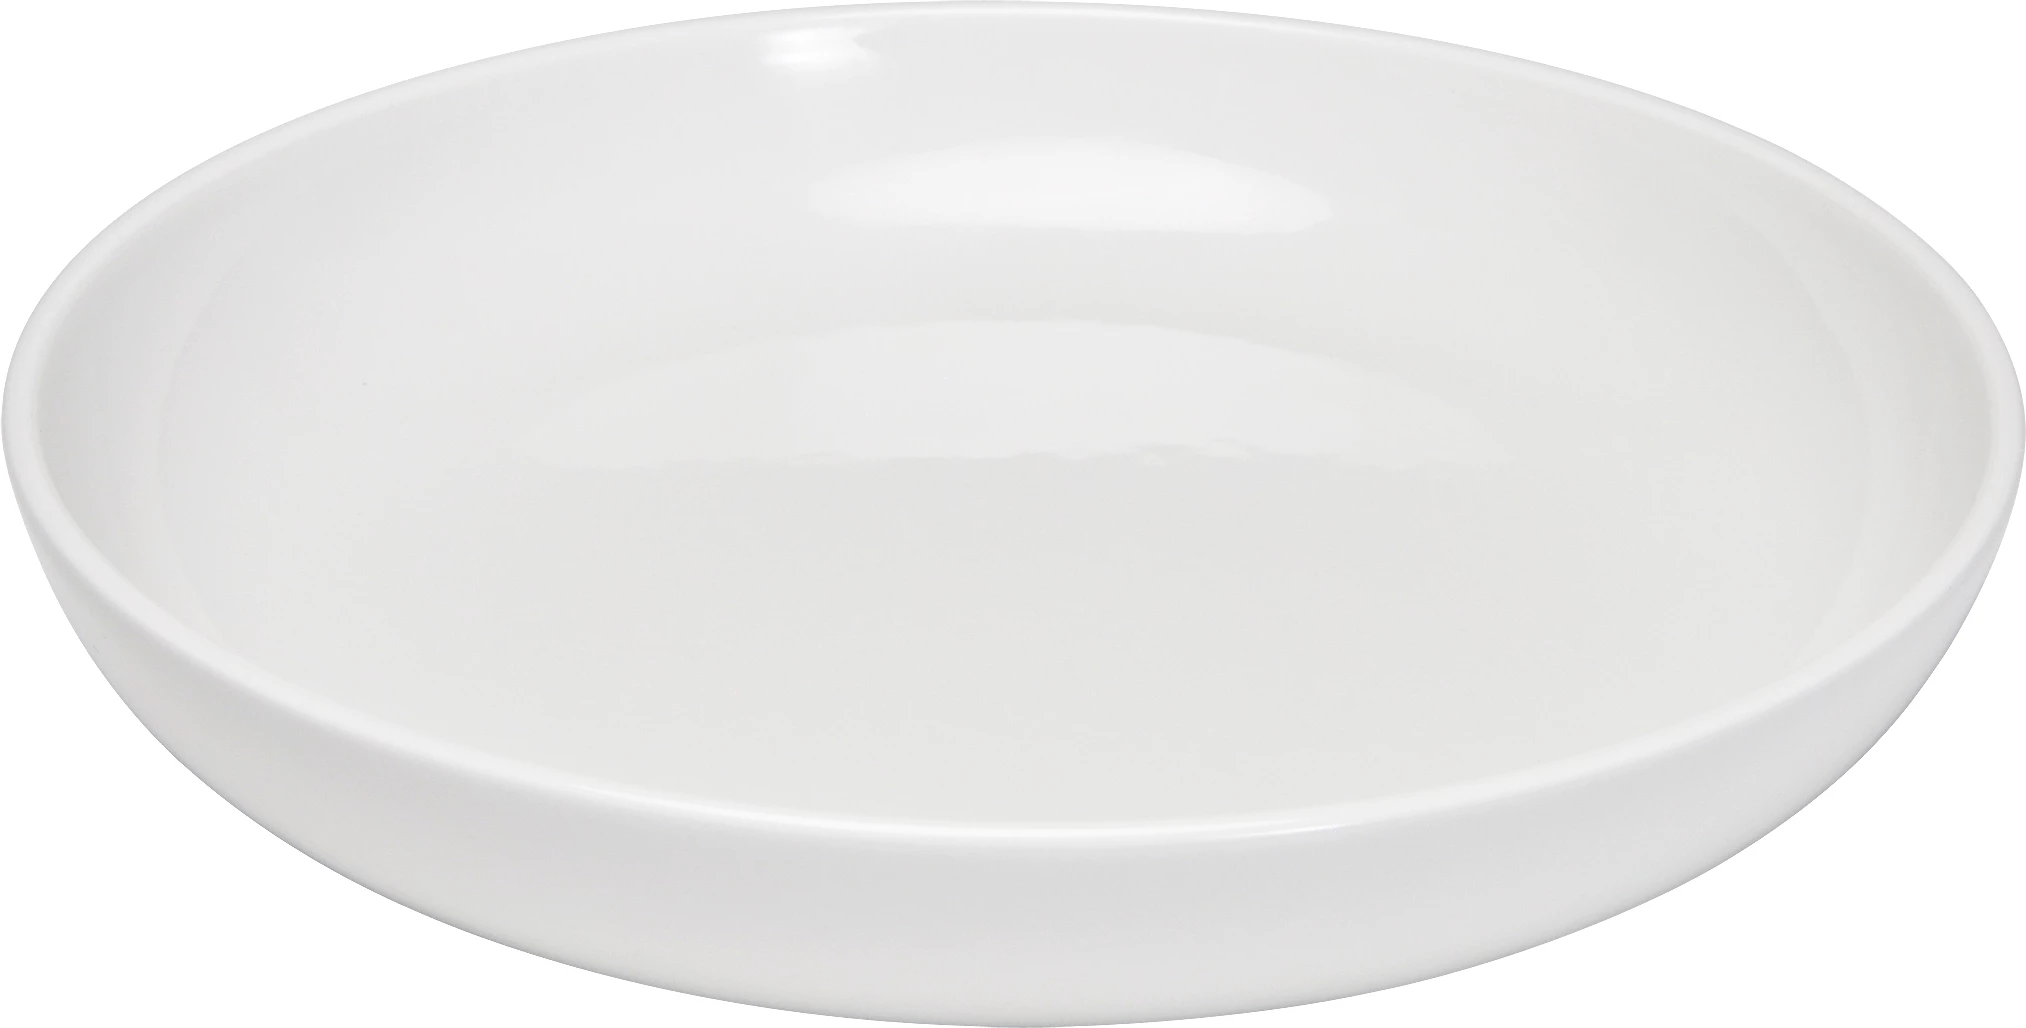 Figgjo Base tallerken uden fane med høj kant, flad, ø22 cm